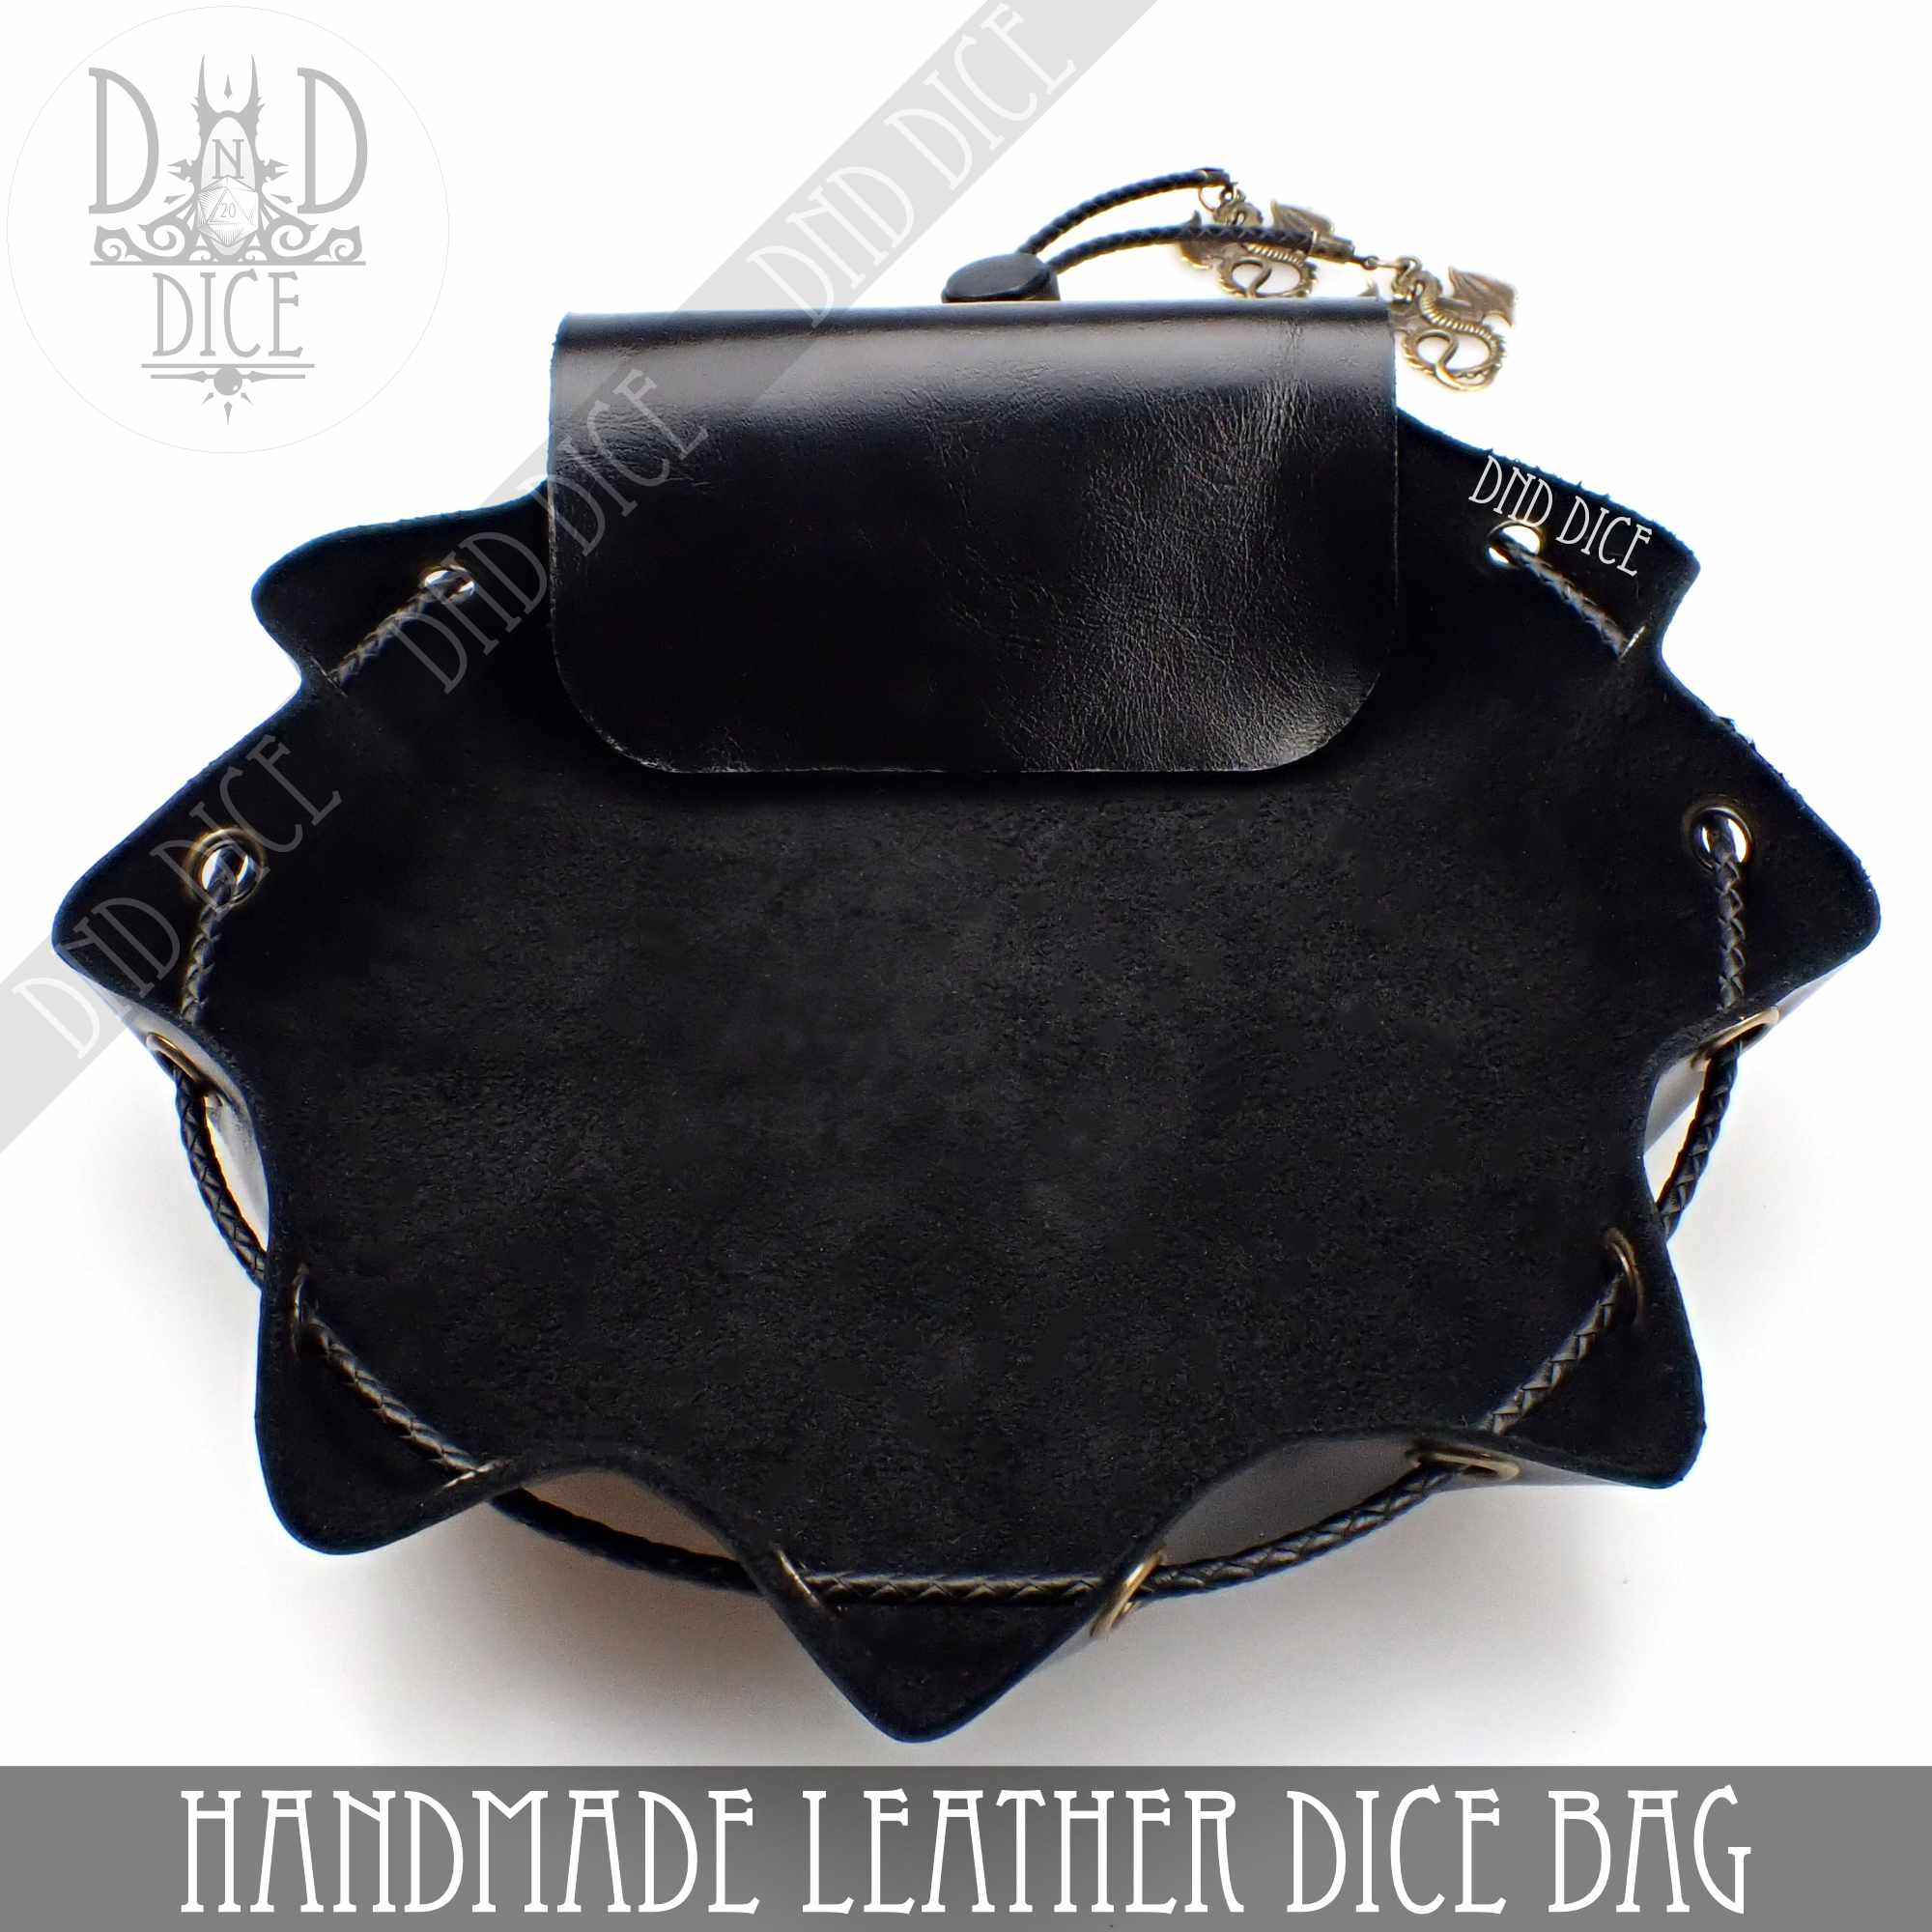 Buy Dnd Shoulder Handbag, D20 Dice Gifts, Dnd Leather Purse, Dnd Dice Bag,  Dnd Dice Purse, Dnd Leather Handbag, Dnd Gifts, Dice Bag Online in India -  Etsy